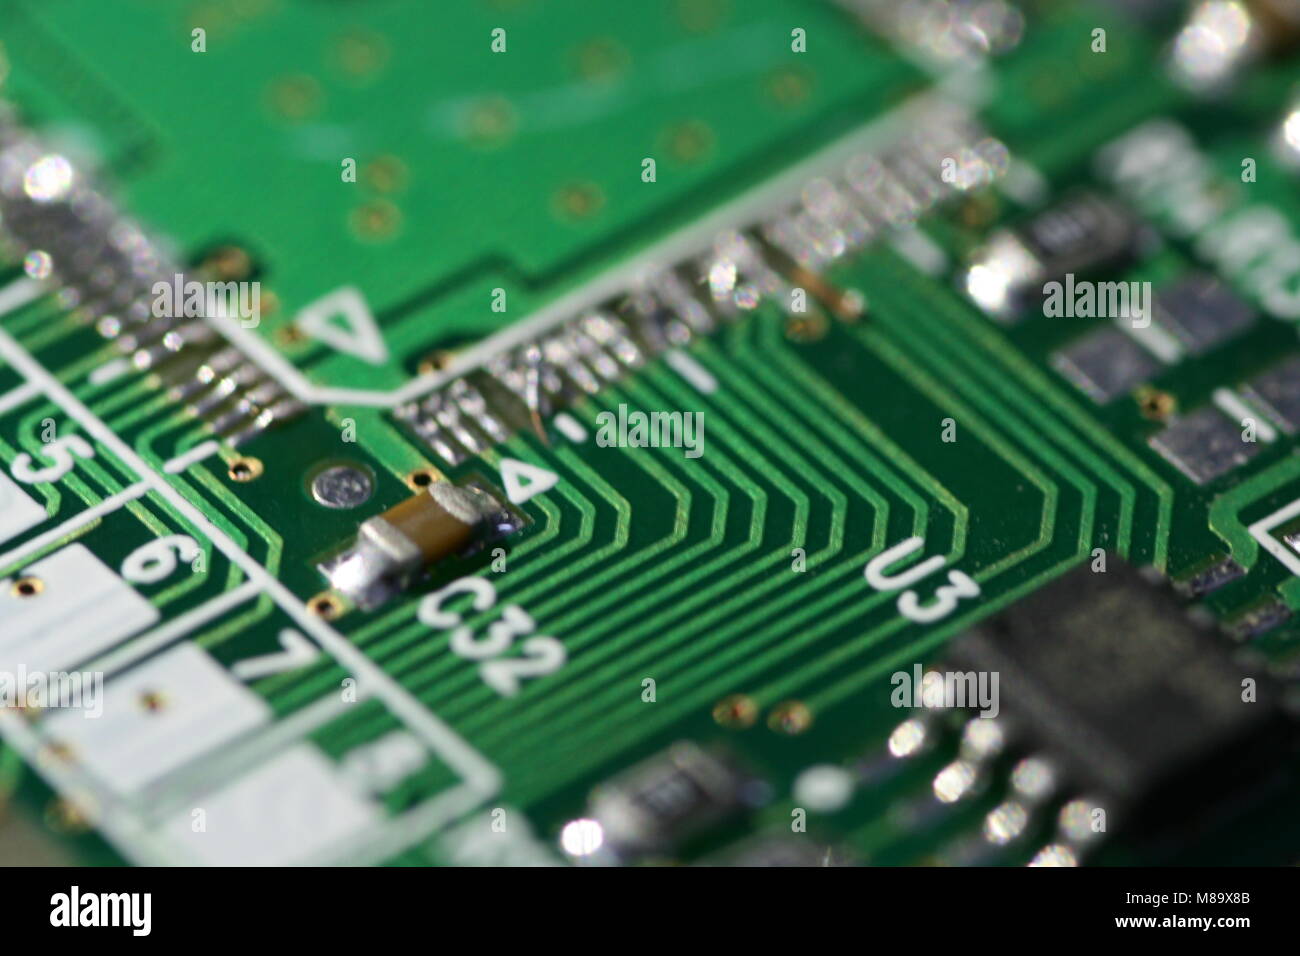 Mehrere SMD-Widerstände, die auf einer grünen Leiterplatte (PCB) gelötet  sind Stockfotografie - Alamy